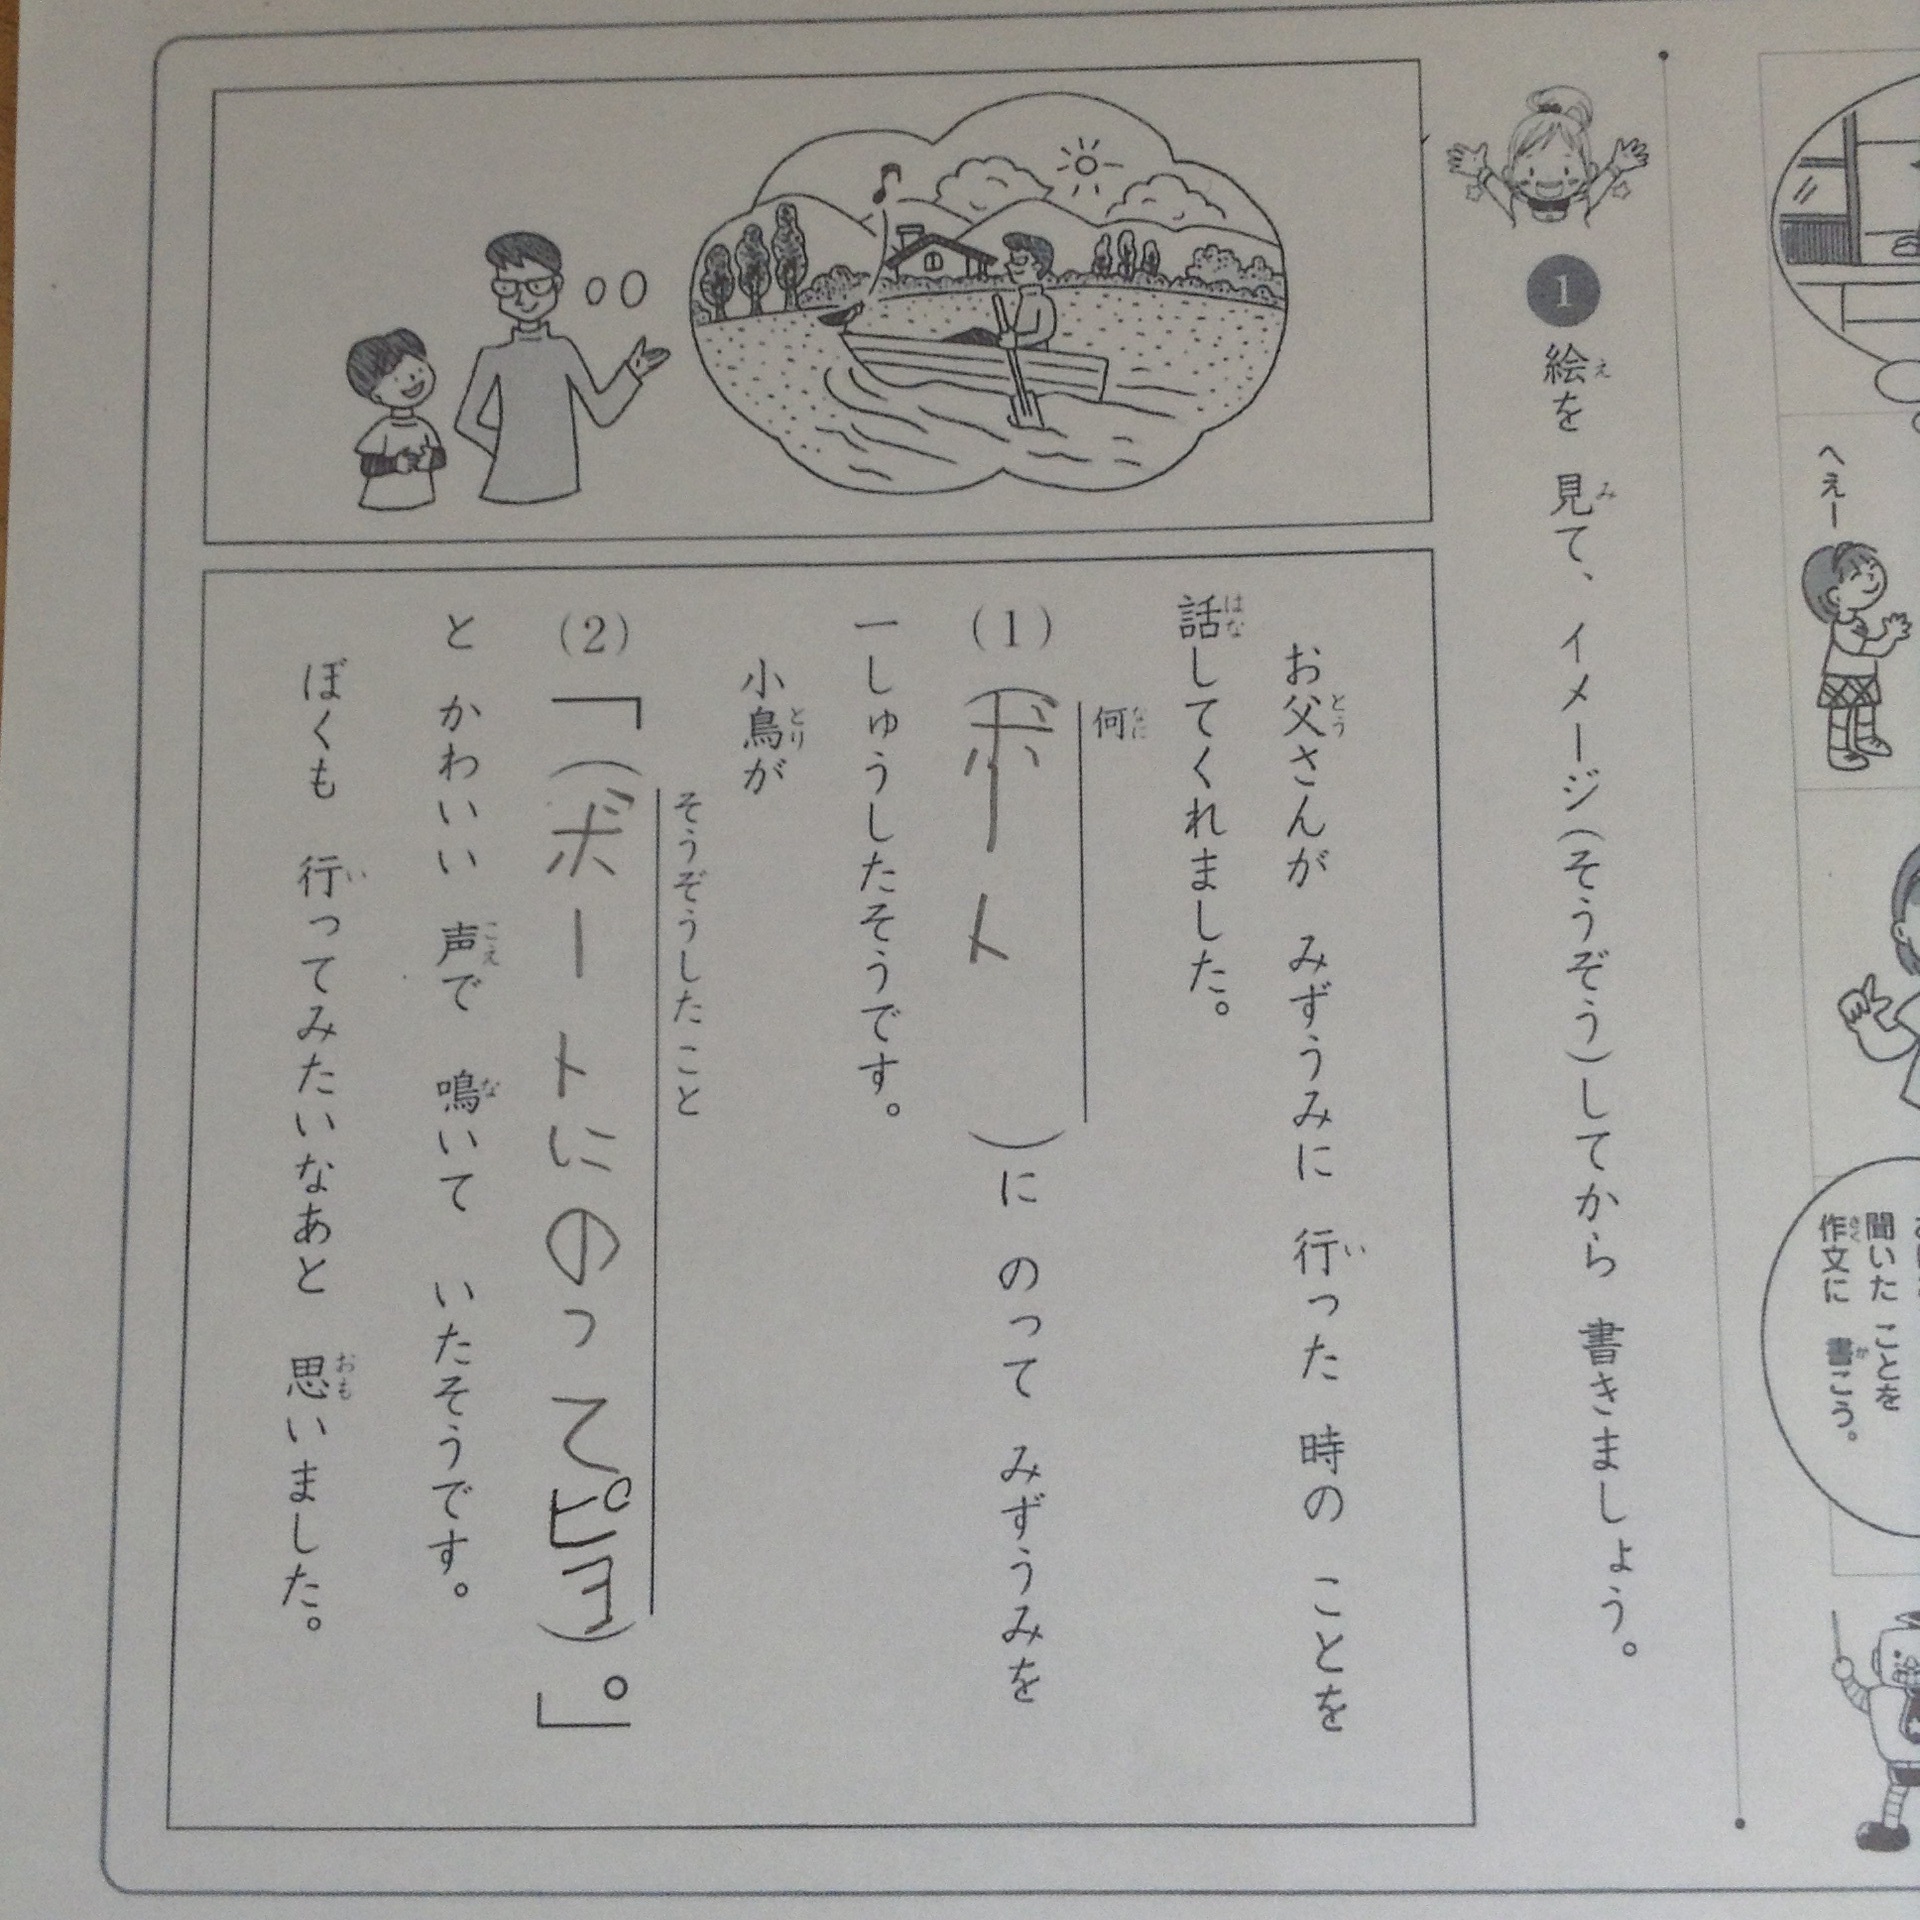 一年生の七田小学生プリント: あかるい学習計画。